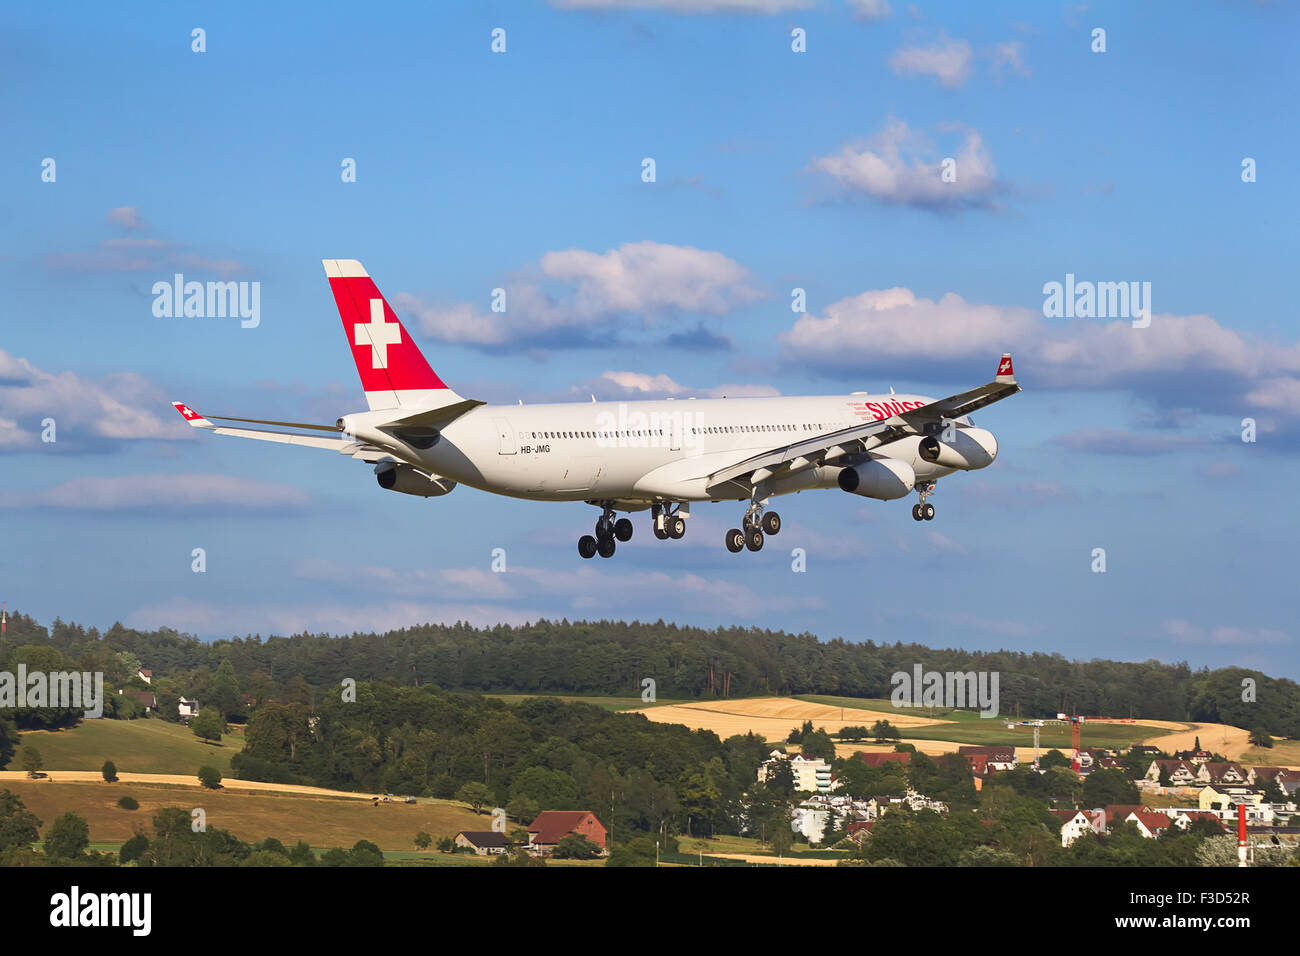 ZURICH - JULY 18: Airbus A-330 landing in Zurich airport after short haul flight on July 18, 2015 in Zurich, Switzerland. Zurich Stock Photo